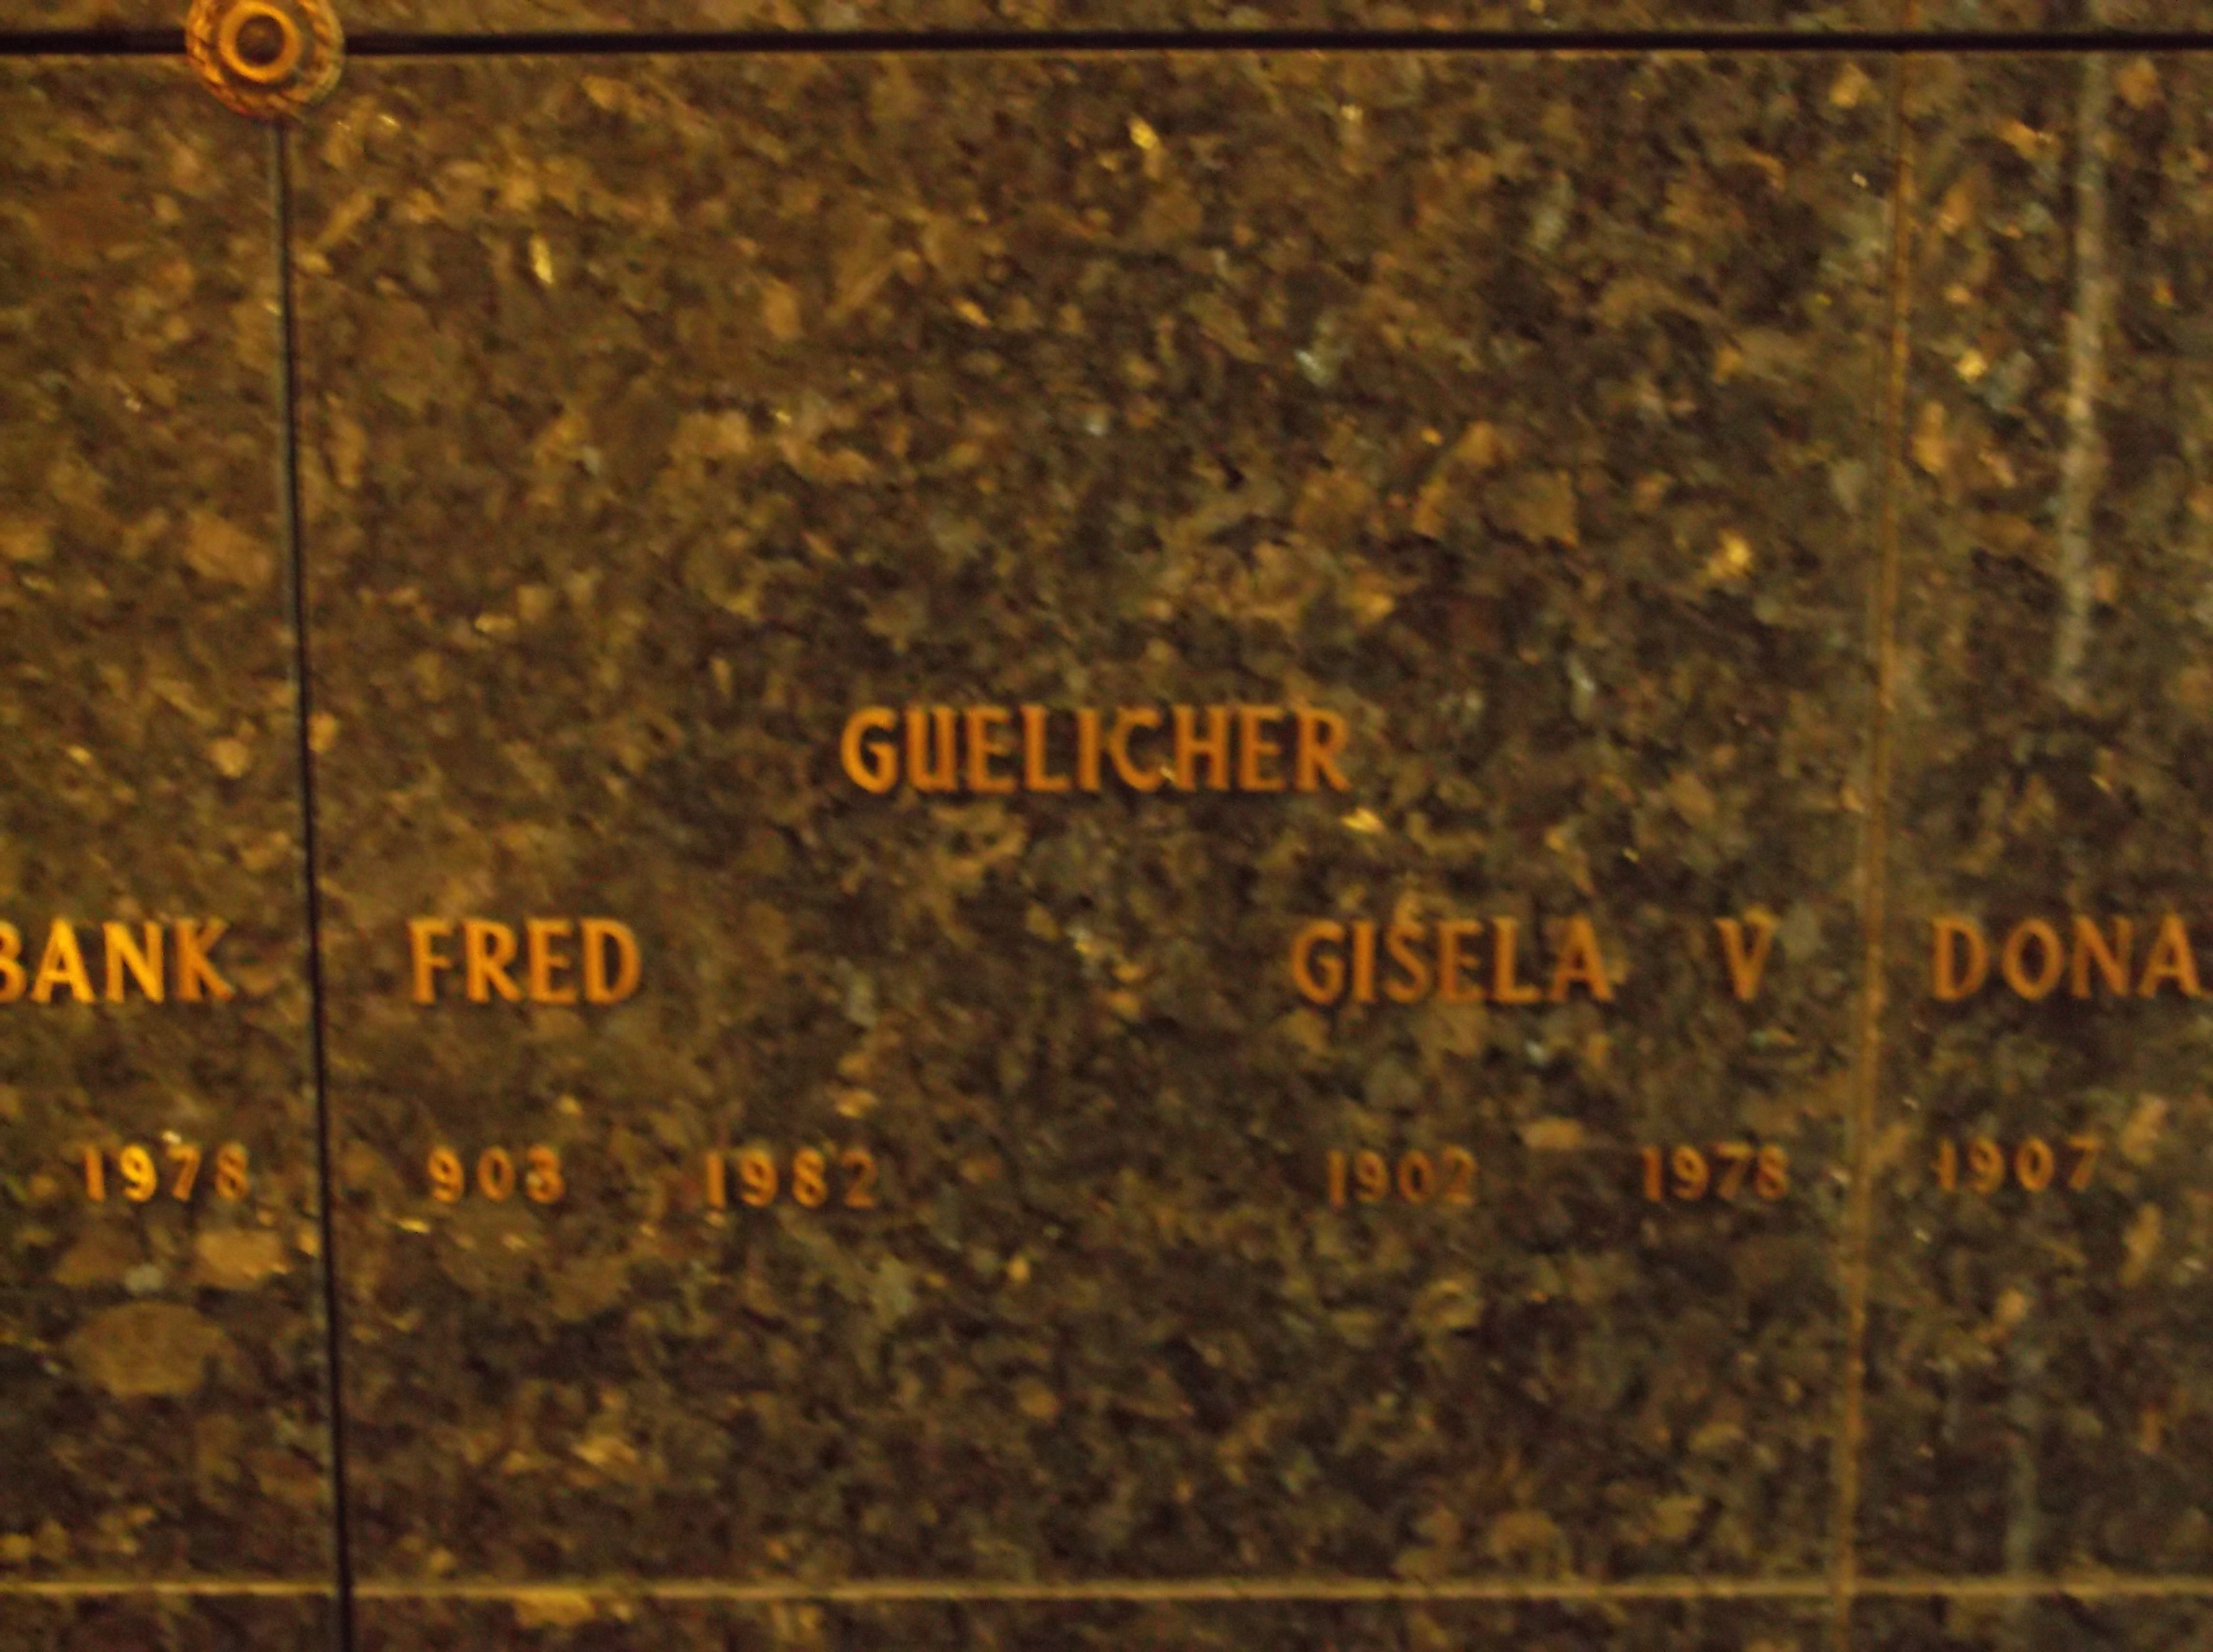 Gisela V Guelicher